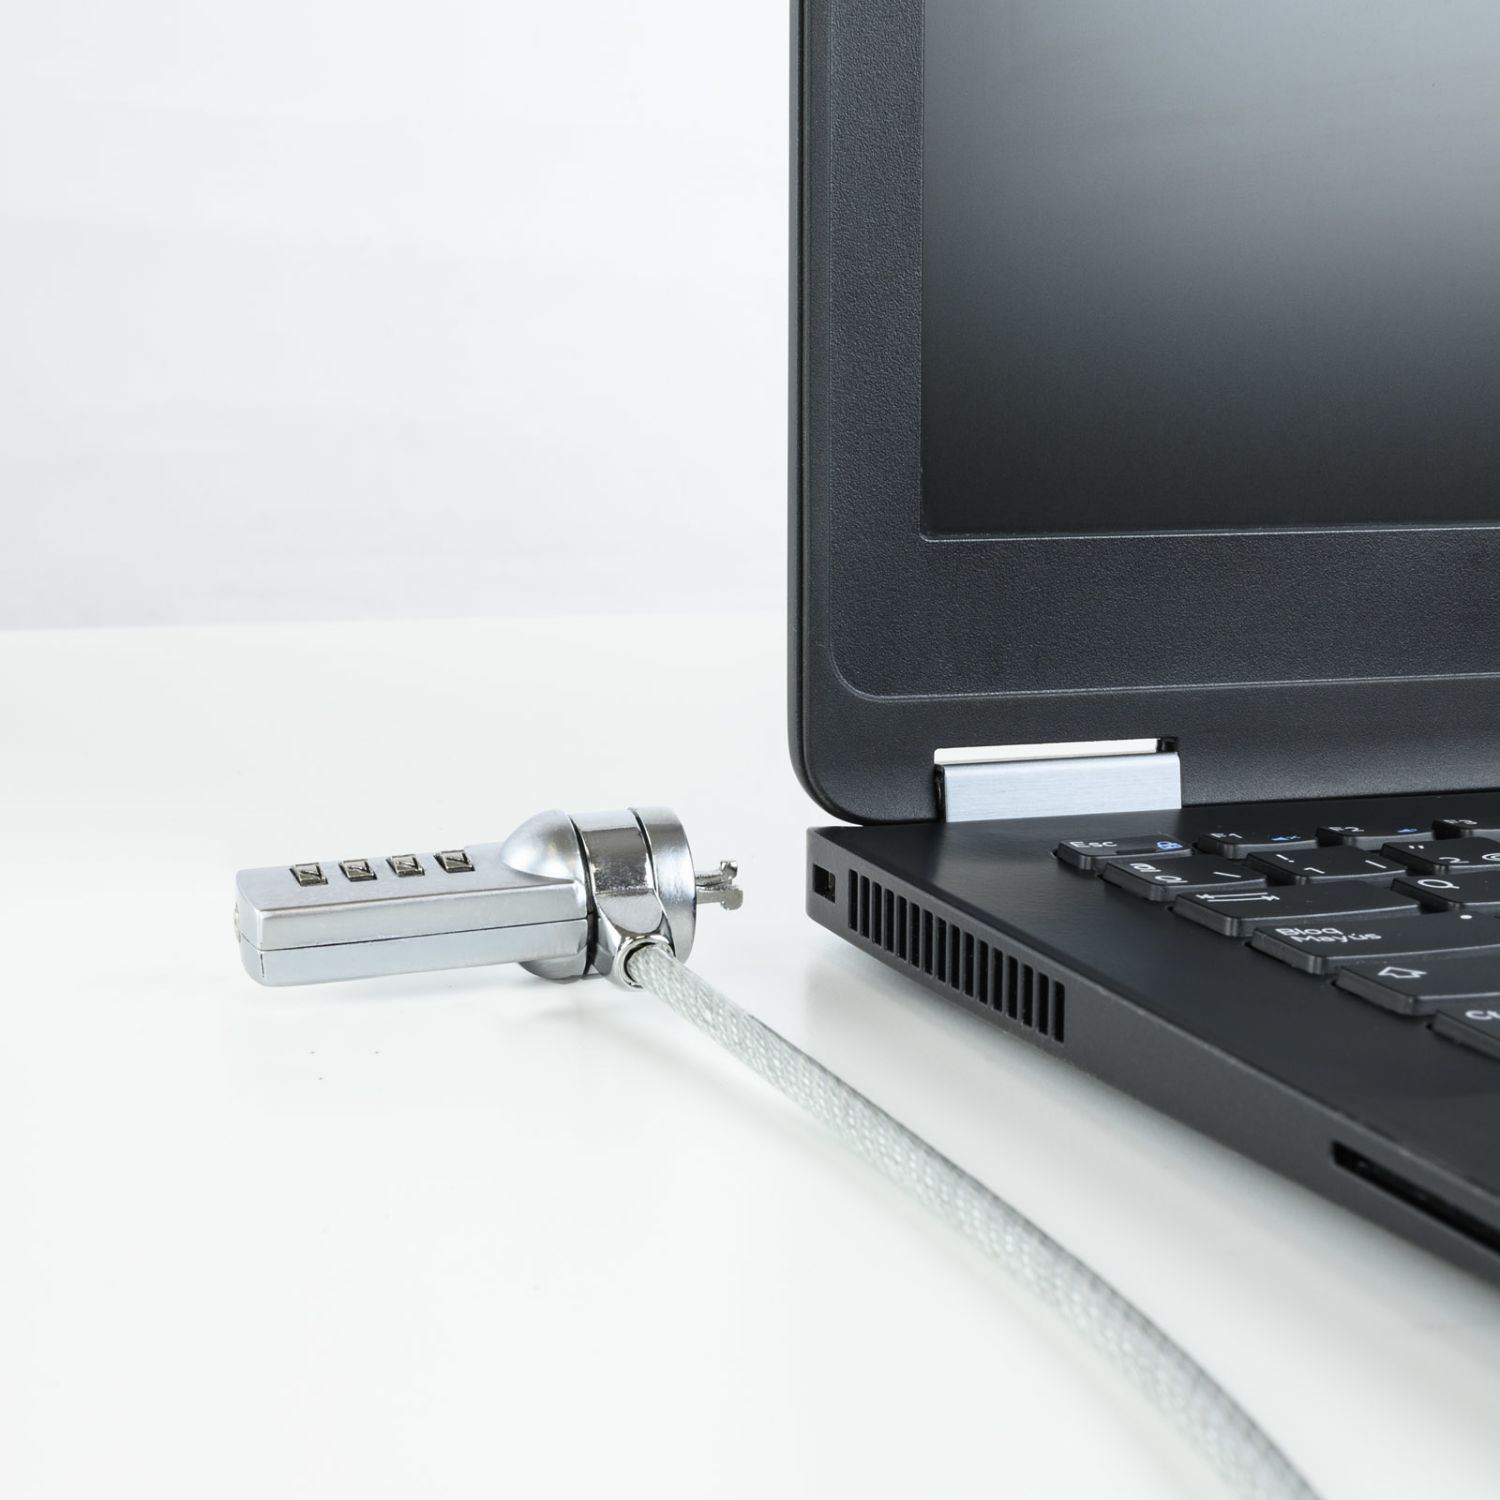 TQCLKC0015 - Cable de Seguridad para portatiles TOOQ con combinacin 1.5m (TQCLKC0015)